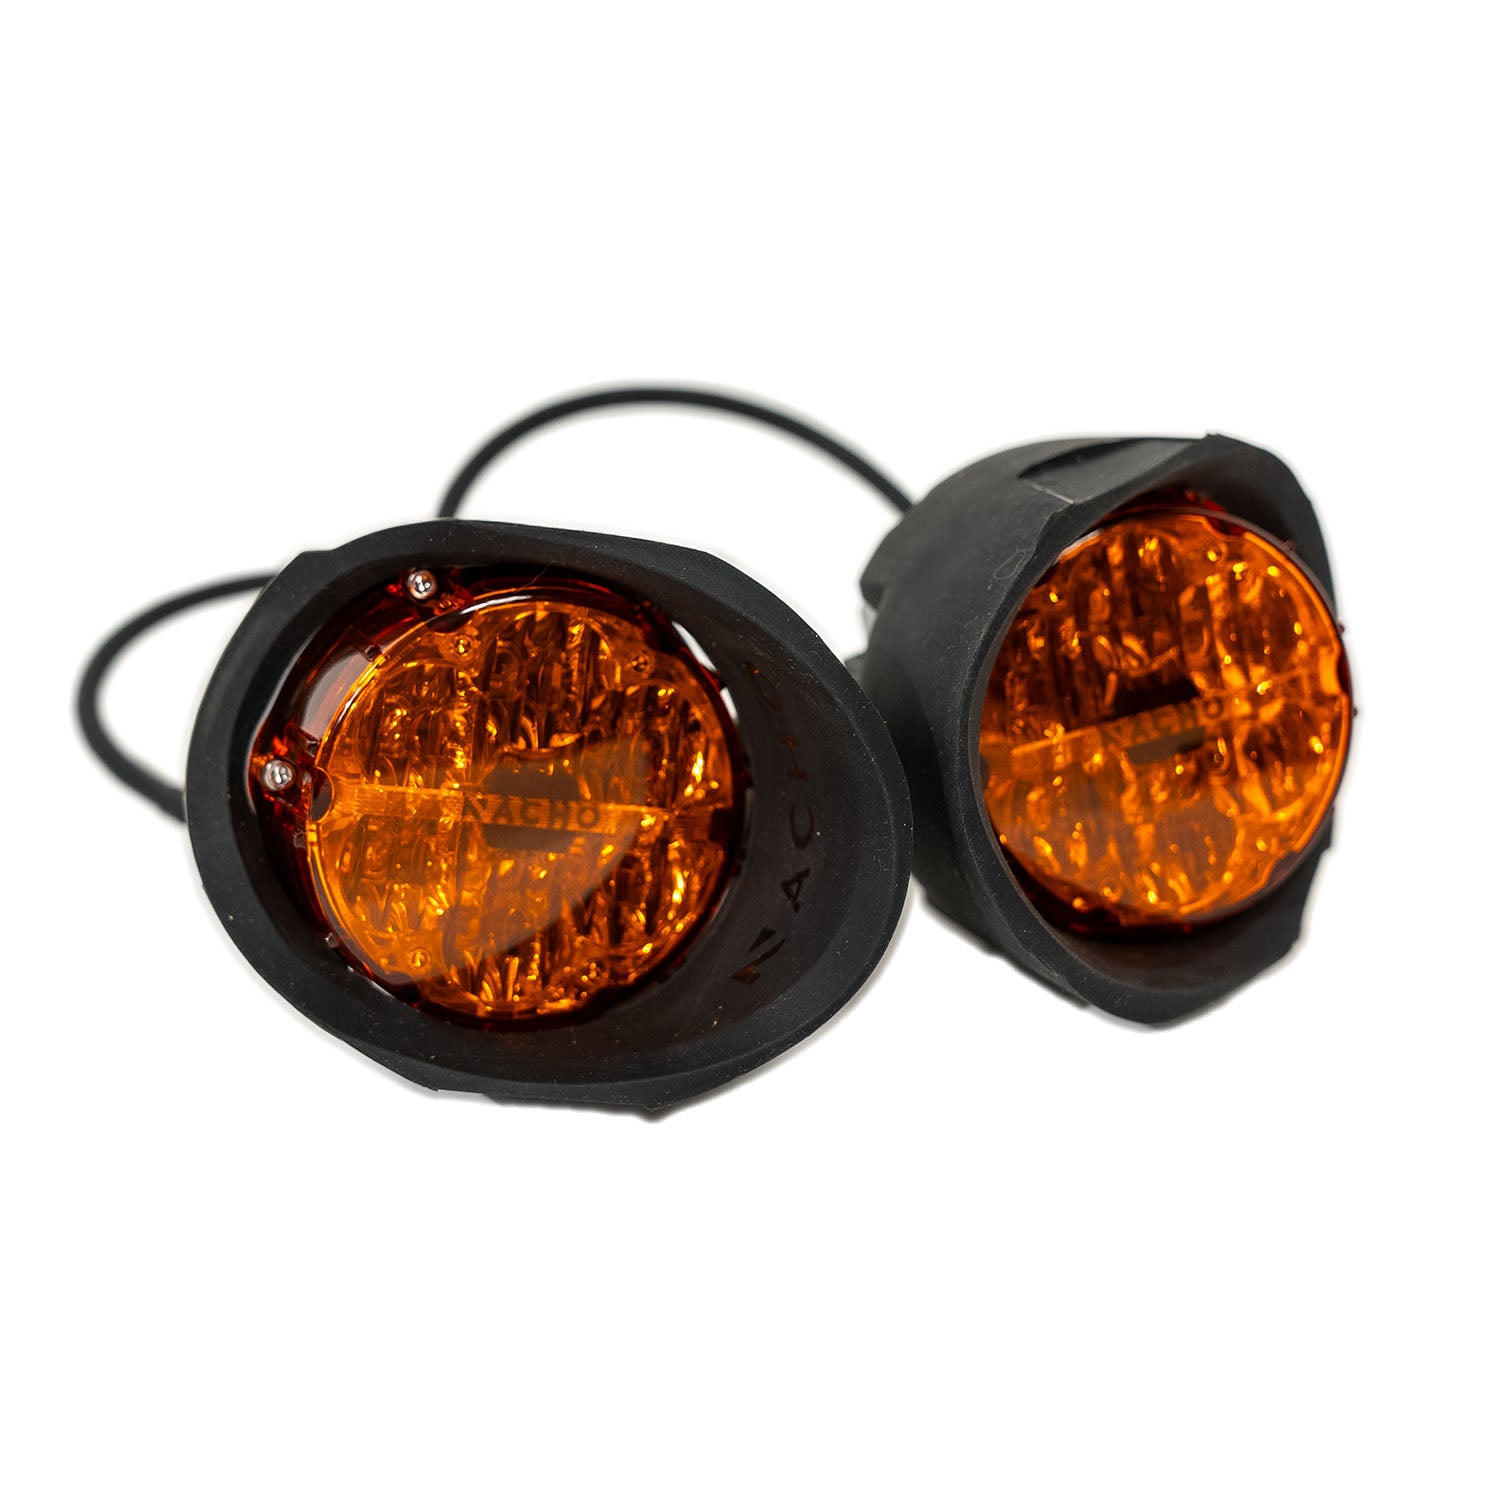 Fog light set (amber lens) for Sprinter vans